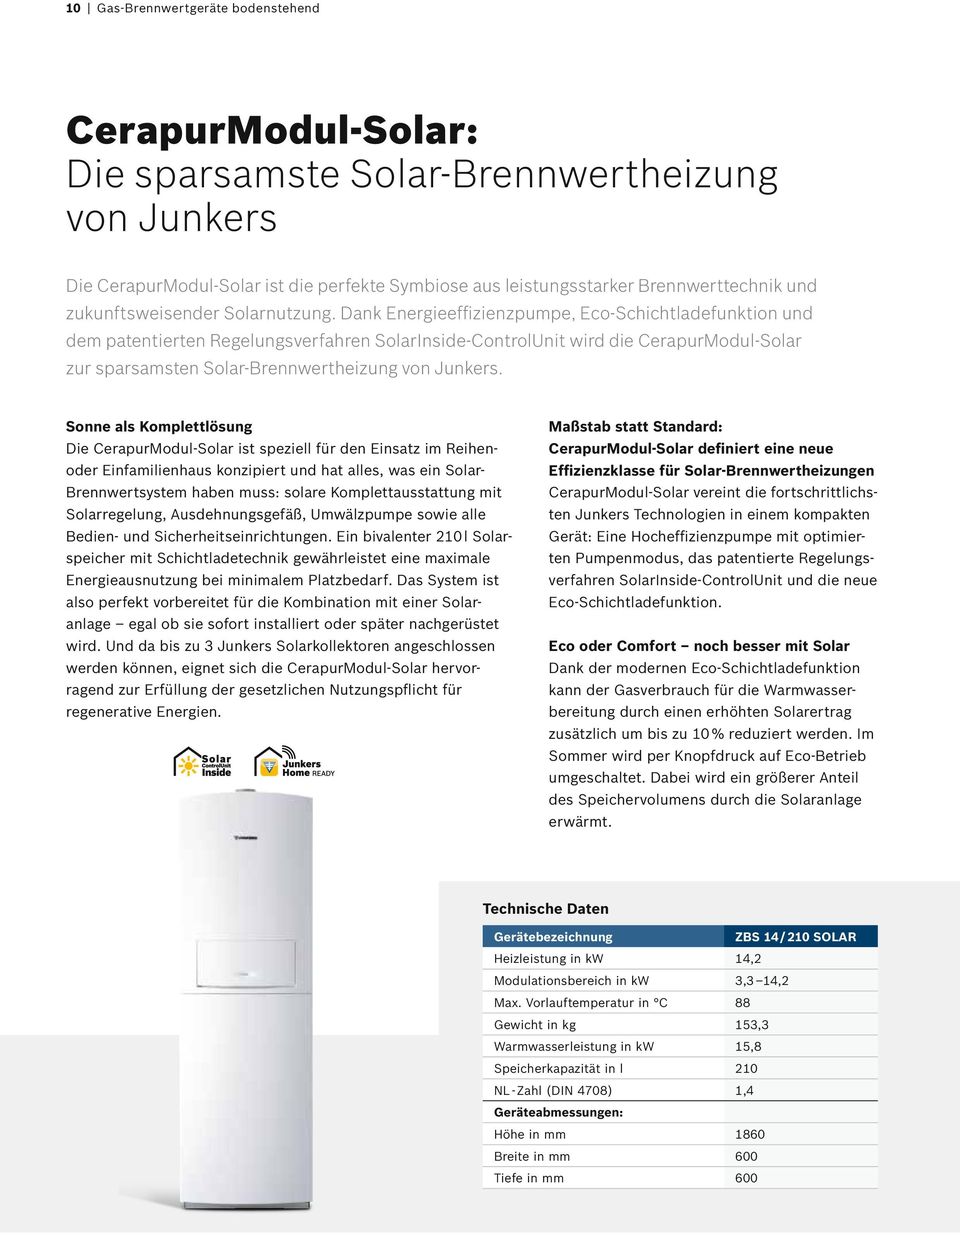 Dank Energieeffizienzpumpe, Eco-Schichtladefunktion und dem paten tierten Regelungsverfahren SolarInside-ControlUnit wird die CerapurModul-Solar zur sparsamsten Solar-Brennwert heizung von Junkers.